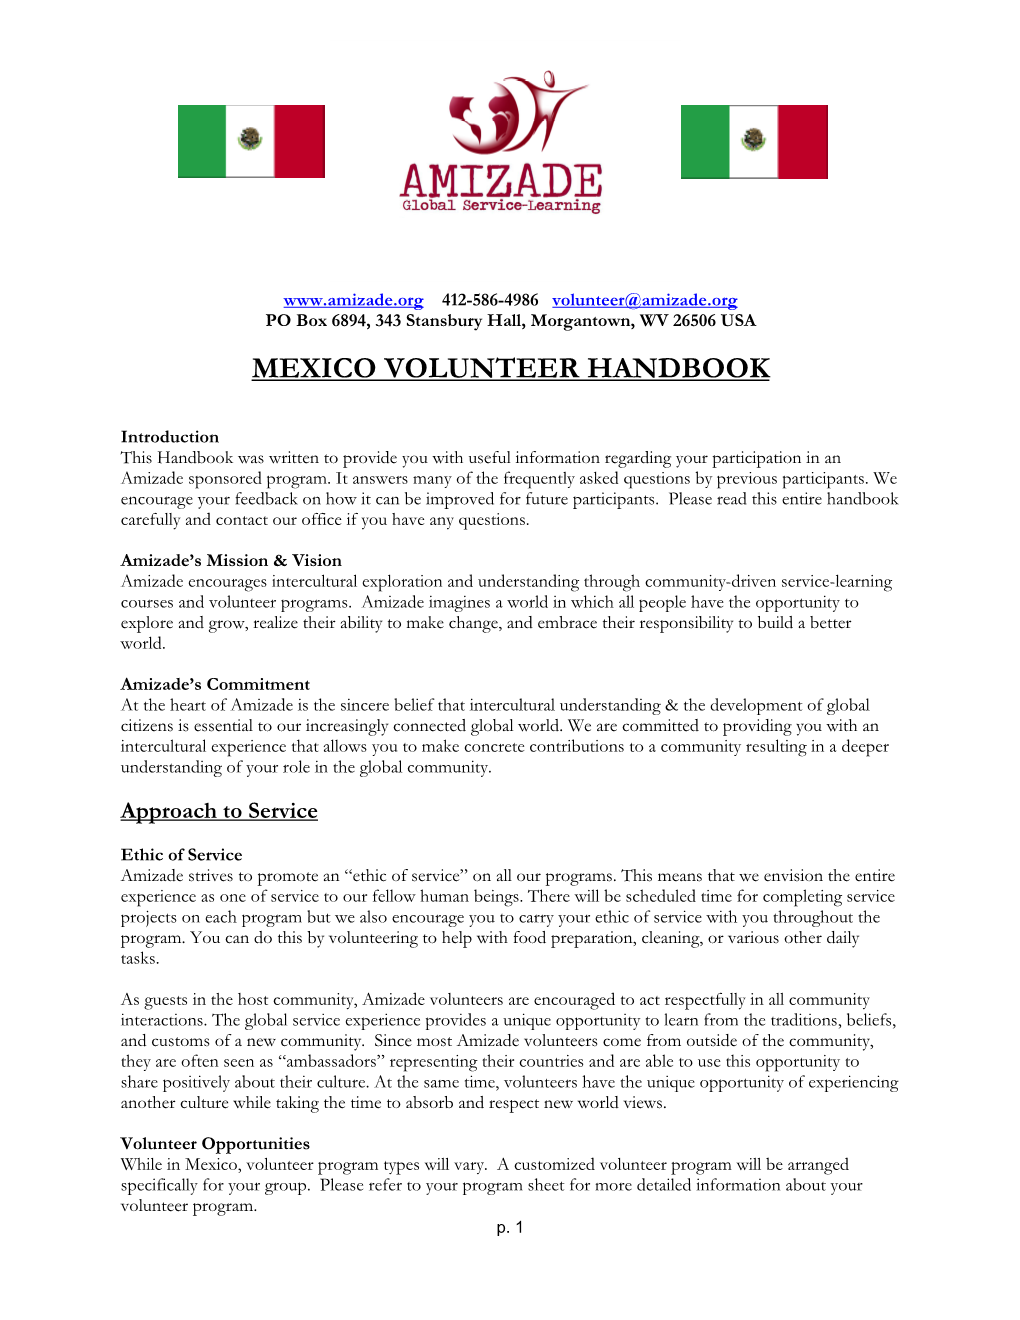 Mexico Volunteer Handbook